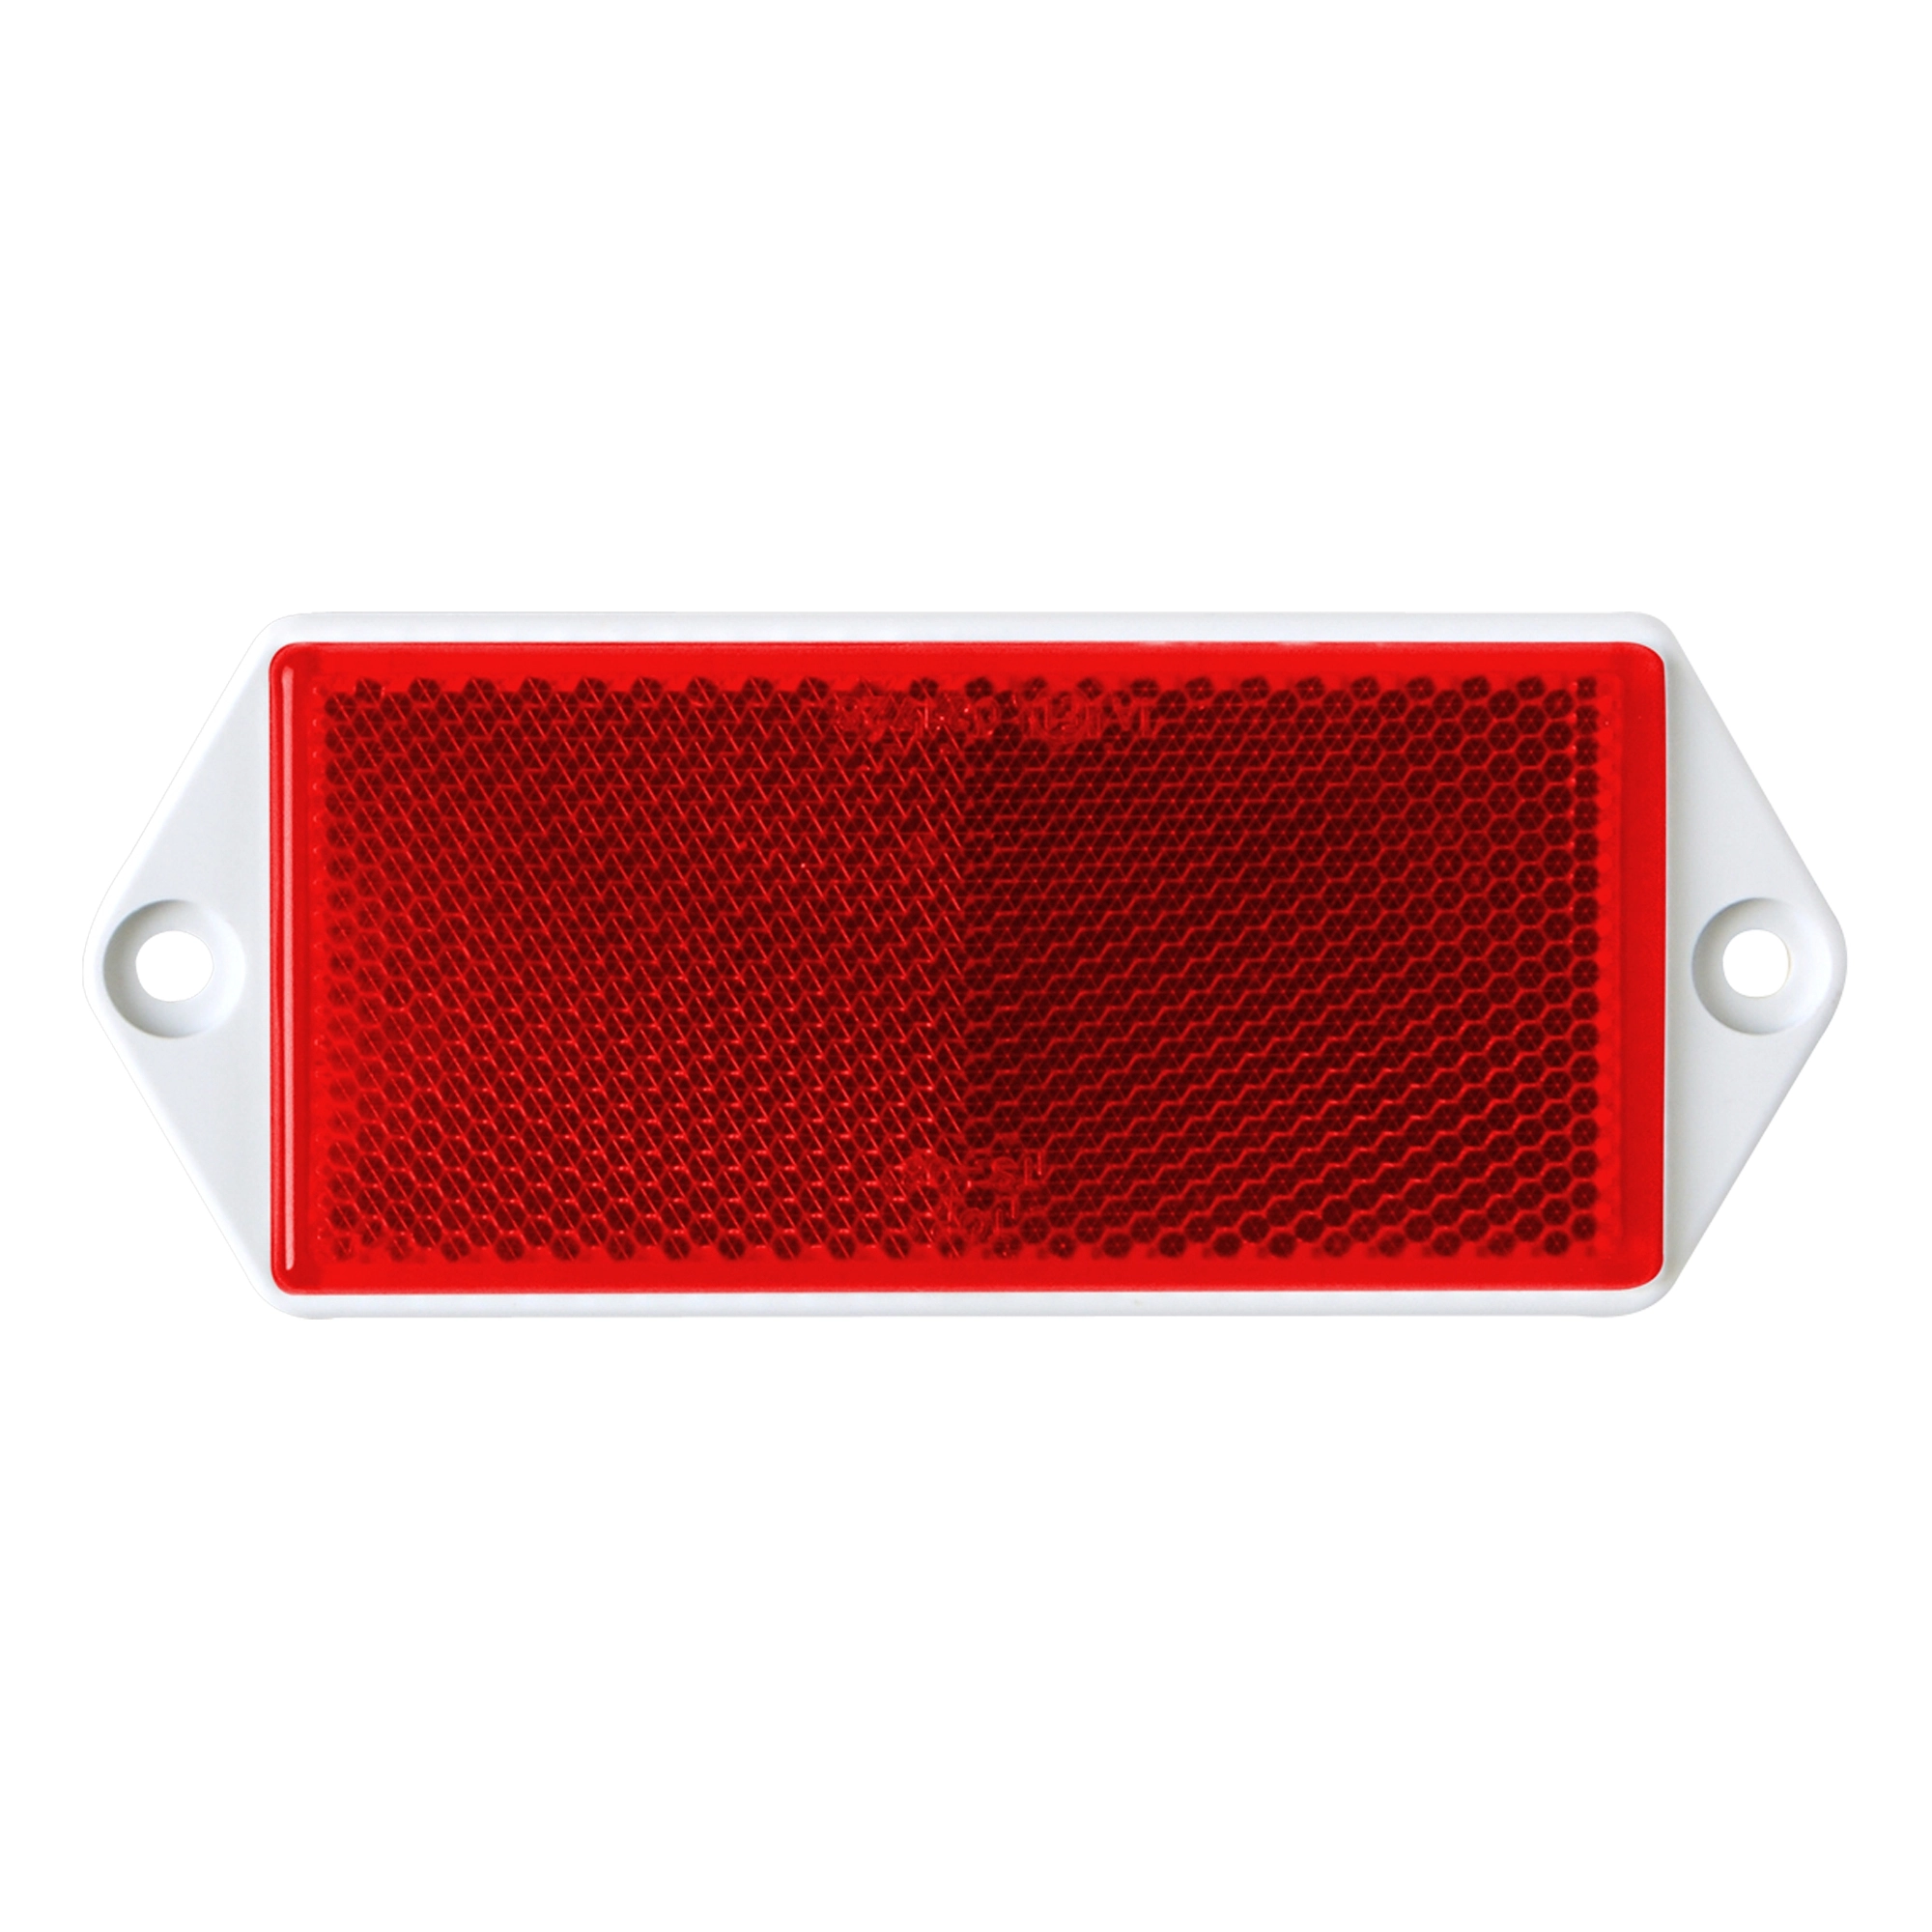 LAS Eckiger Reflektor für PKW Anhänger 2 Stück Rot kaufen bei OBI